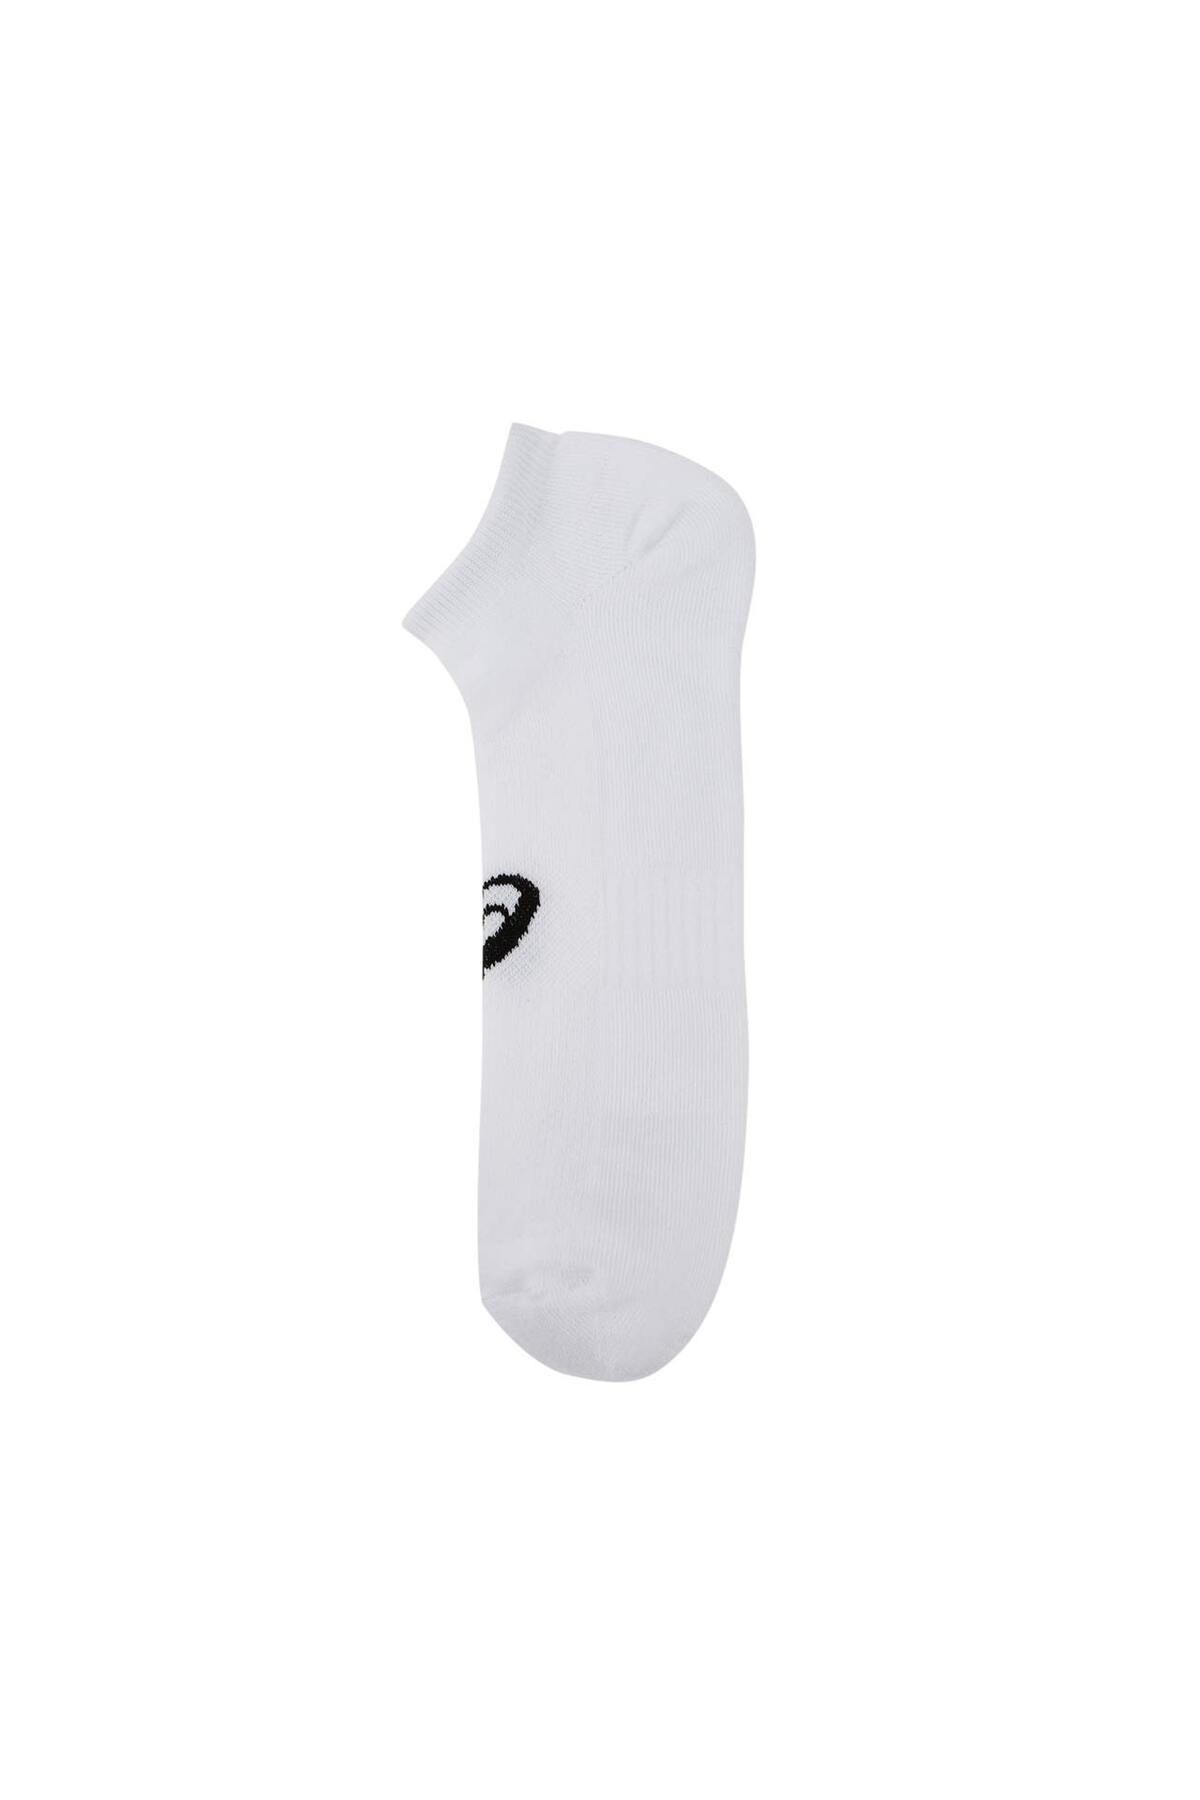 Asics 6ppk Ankle Sock Unisex Beyaz Çorap 3033b556-100